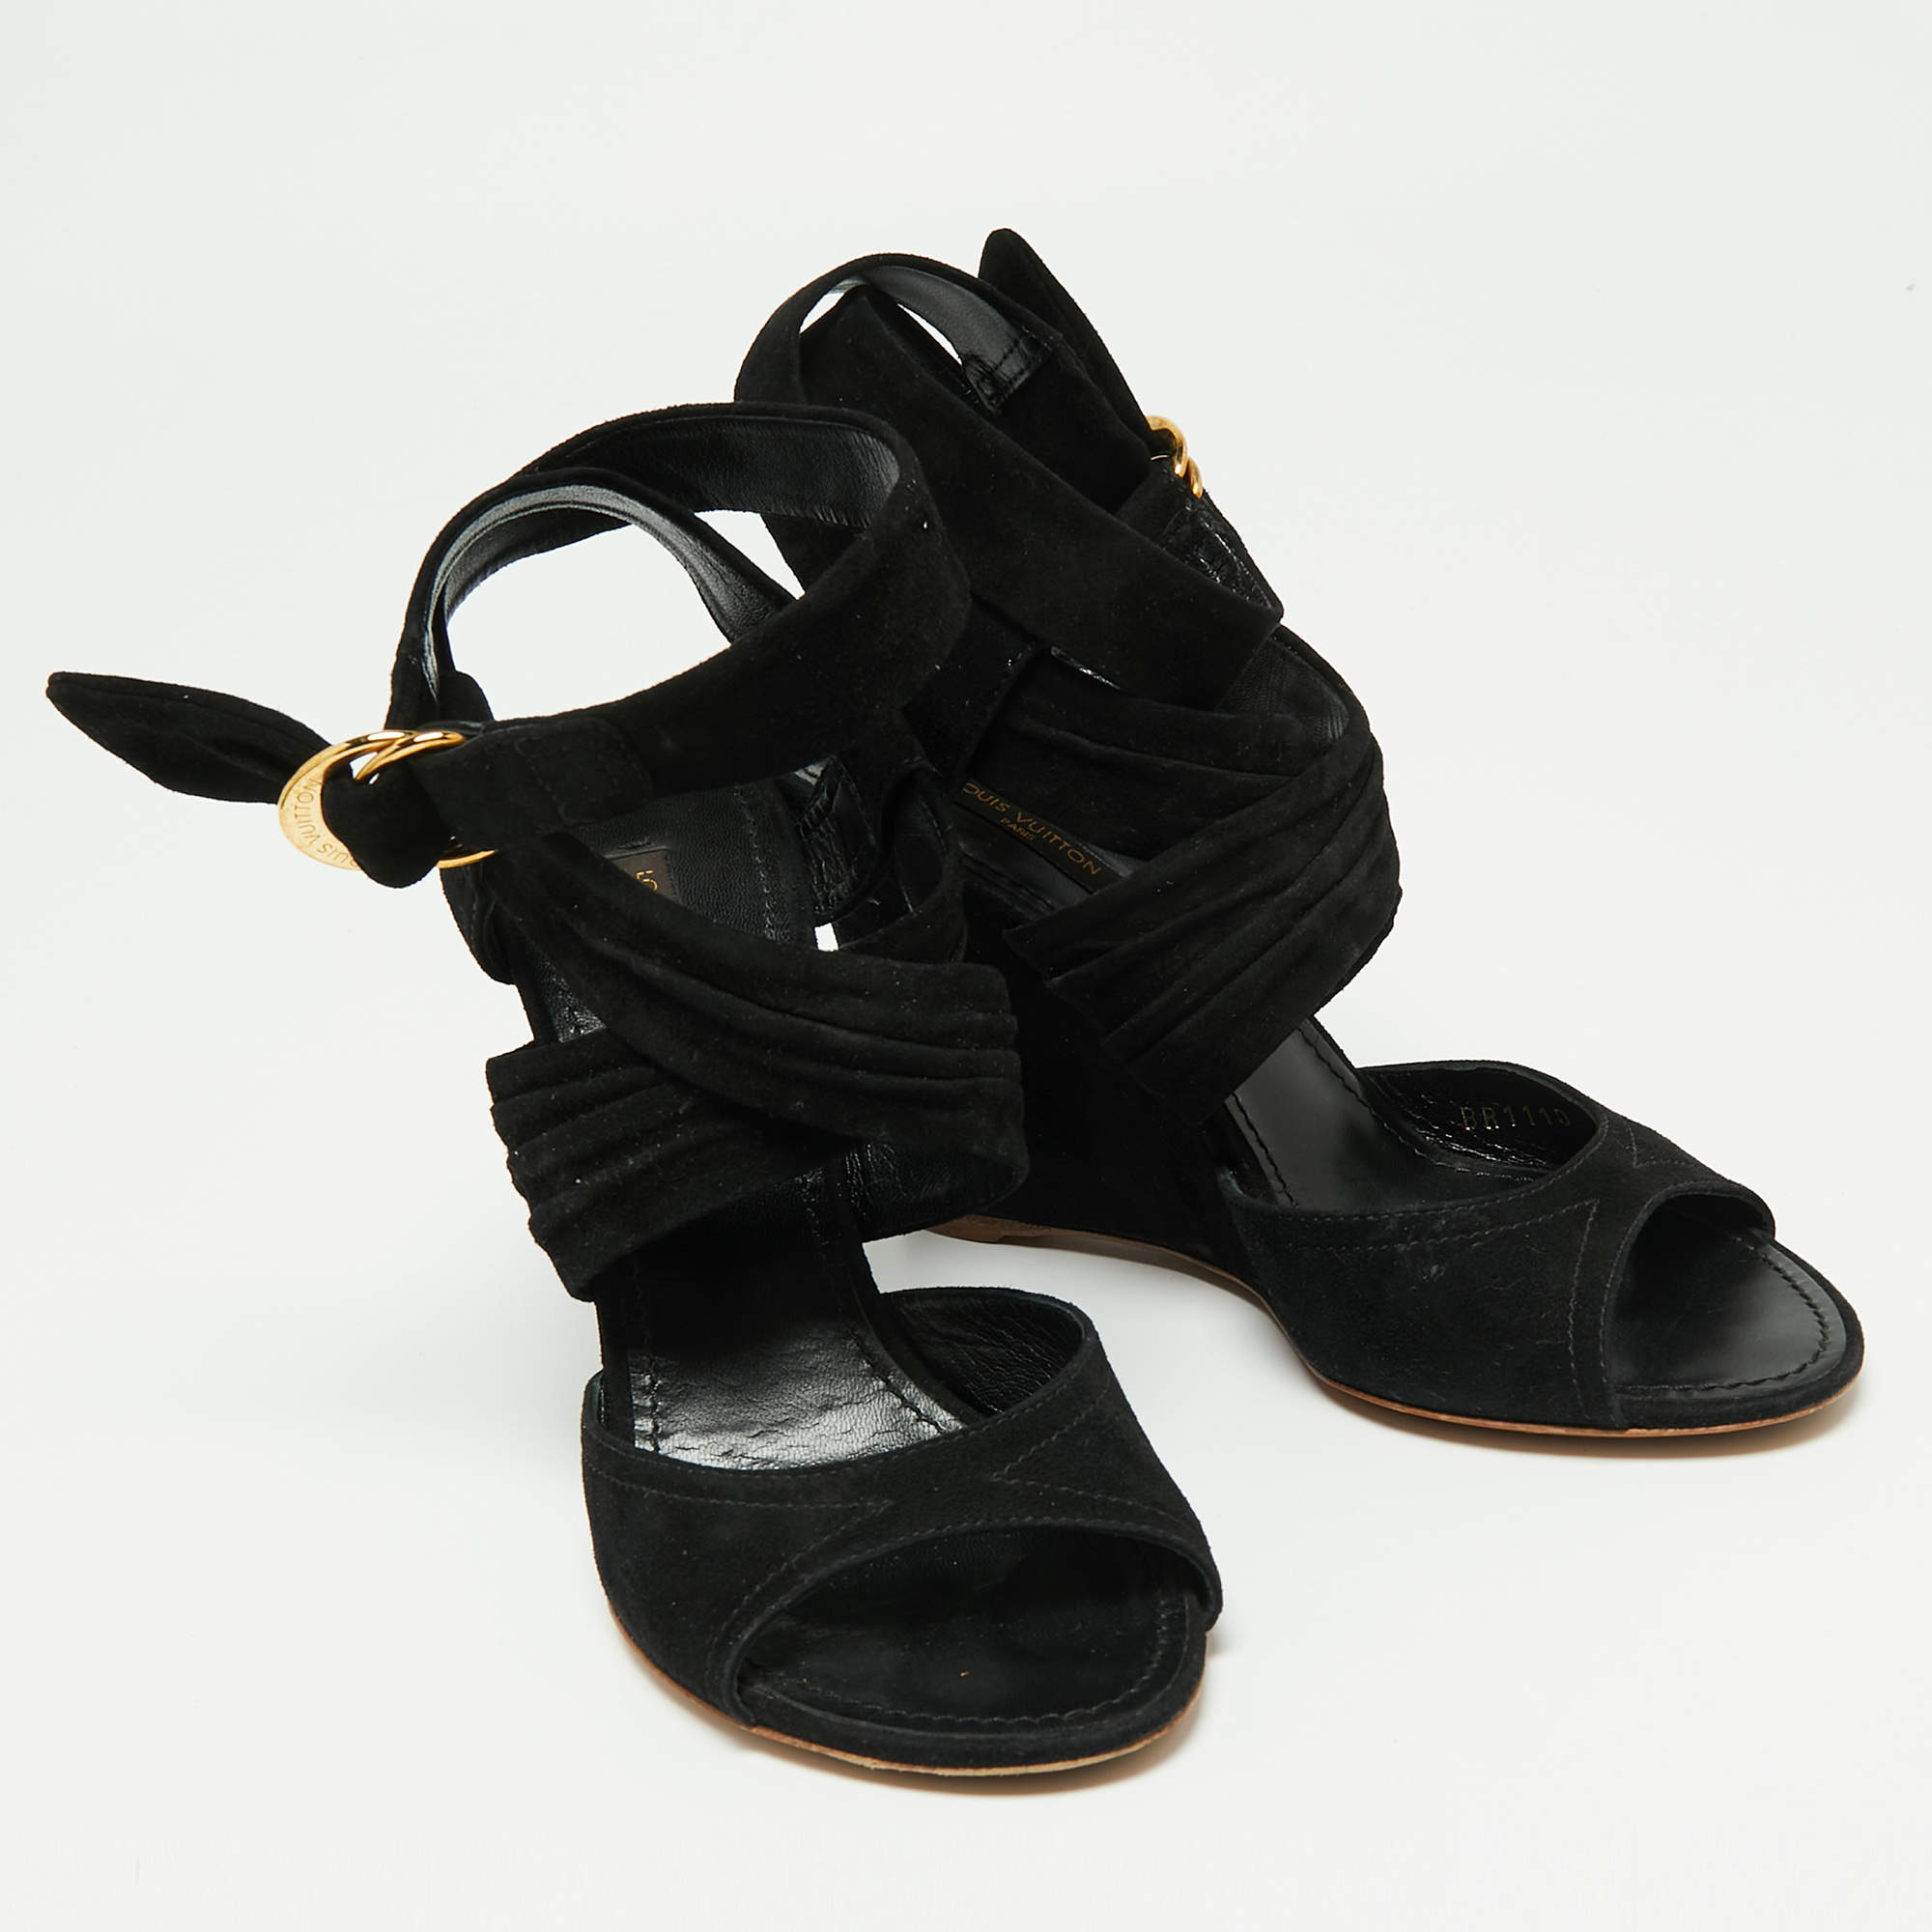 Louis Vuitton Black Suede Crisscross Ankle Wrap Wedge Sandals Size 39